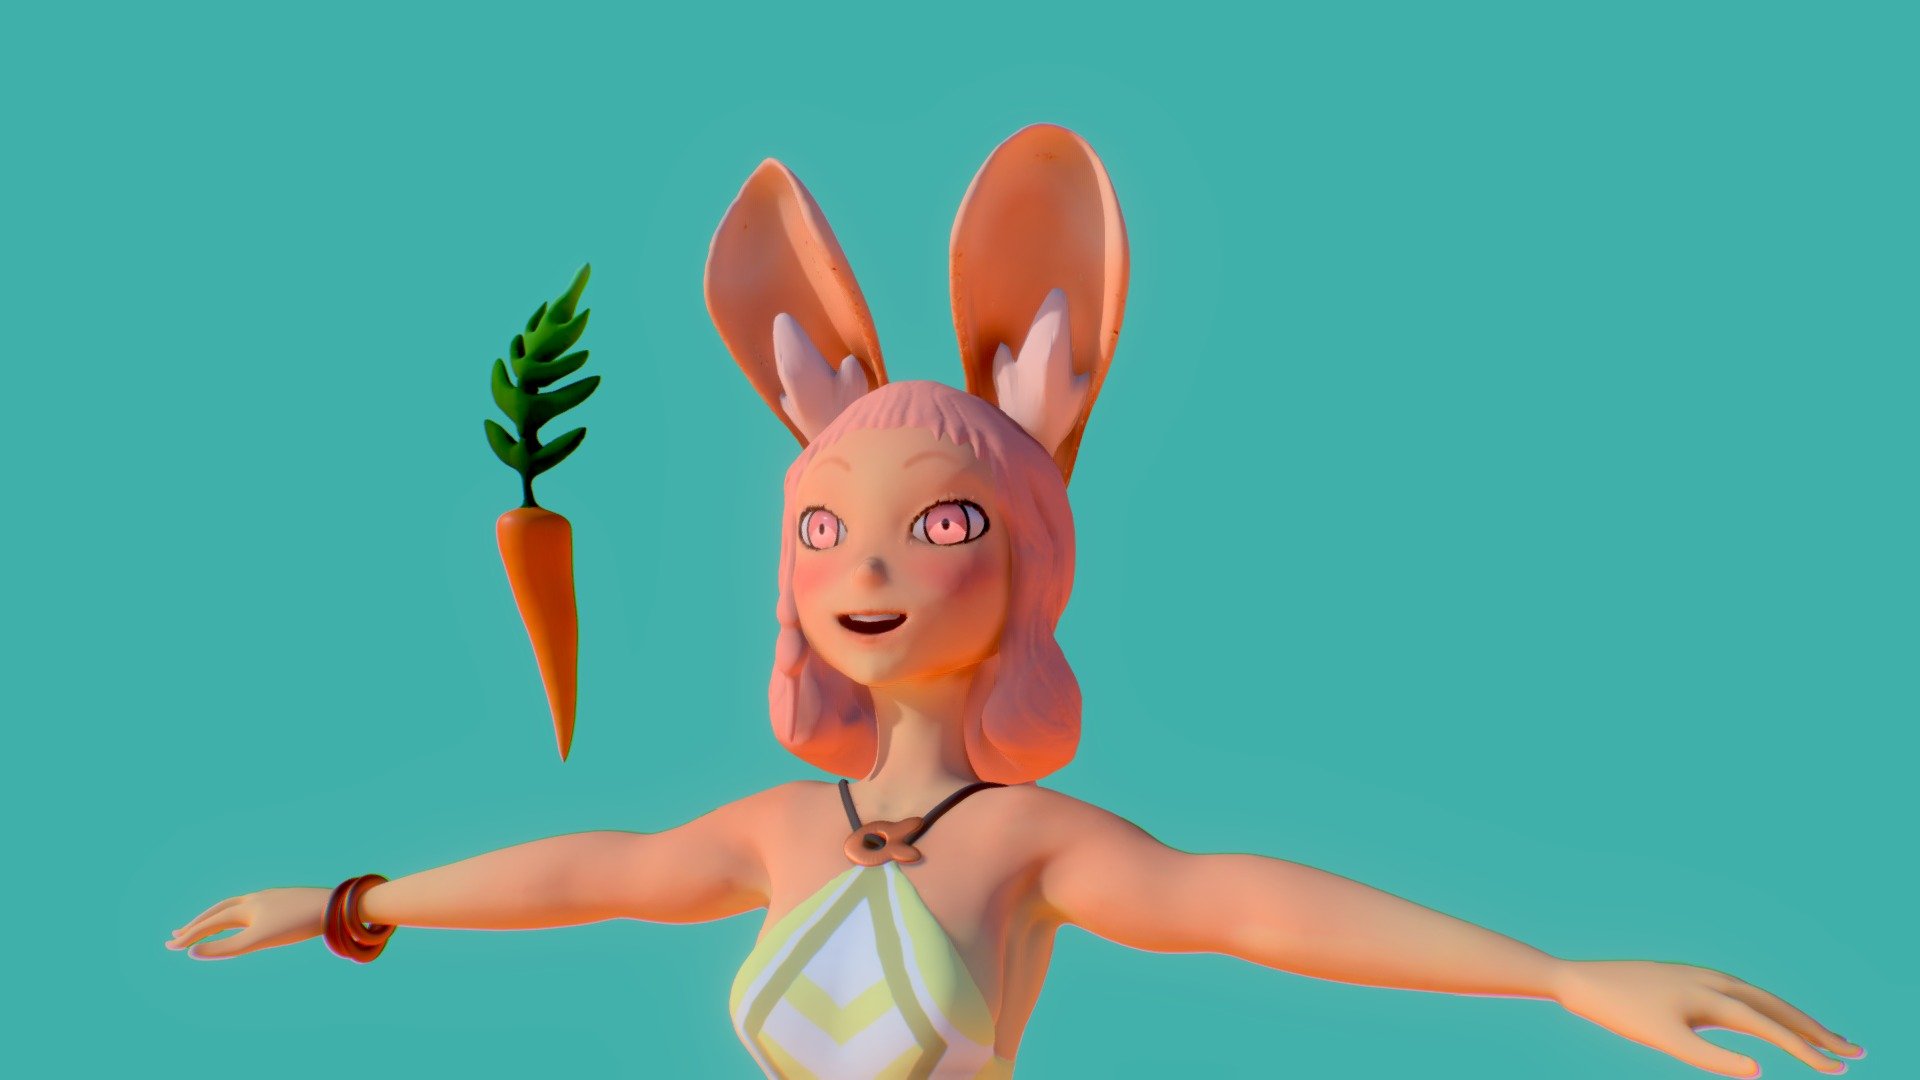 Bunny - Design by xa-xa-xa - Sculpt by me